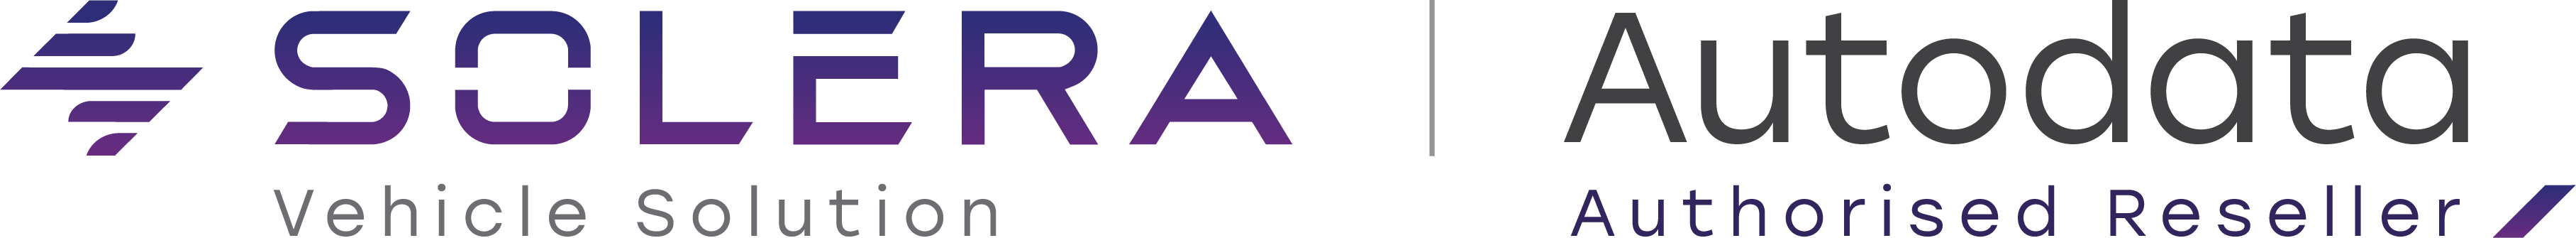 Logotip podjetja Solera in Autodata